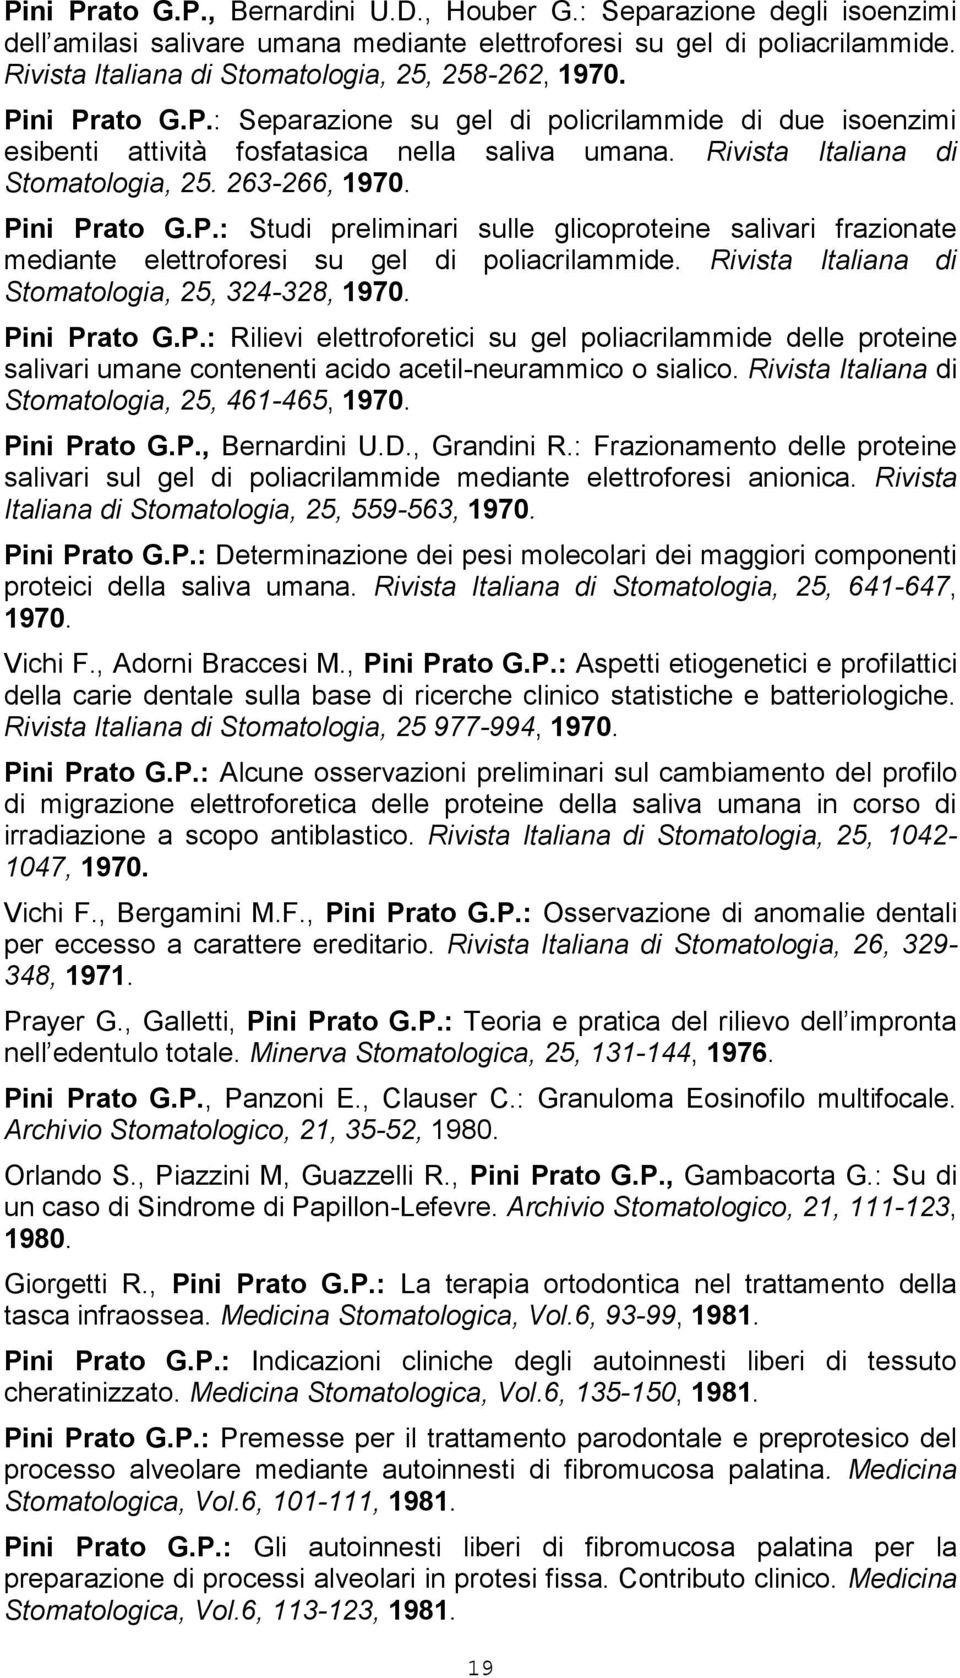 Rivista Italiana di Stomatologia, 25. 263-266, 1970. Pini Prato G.P.: Studi preliminari sulle glicoproteine salivari frazionate mediante elettroforesi su gel di poliacrilammide.